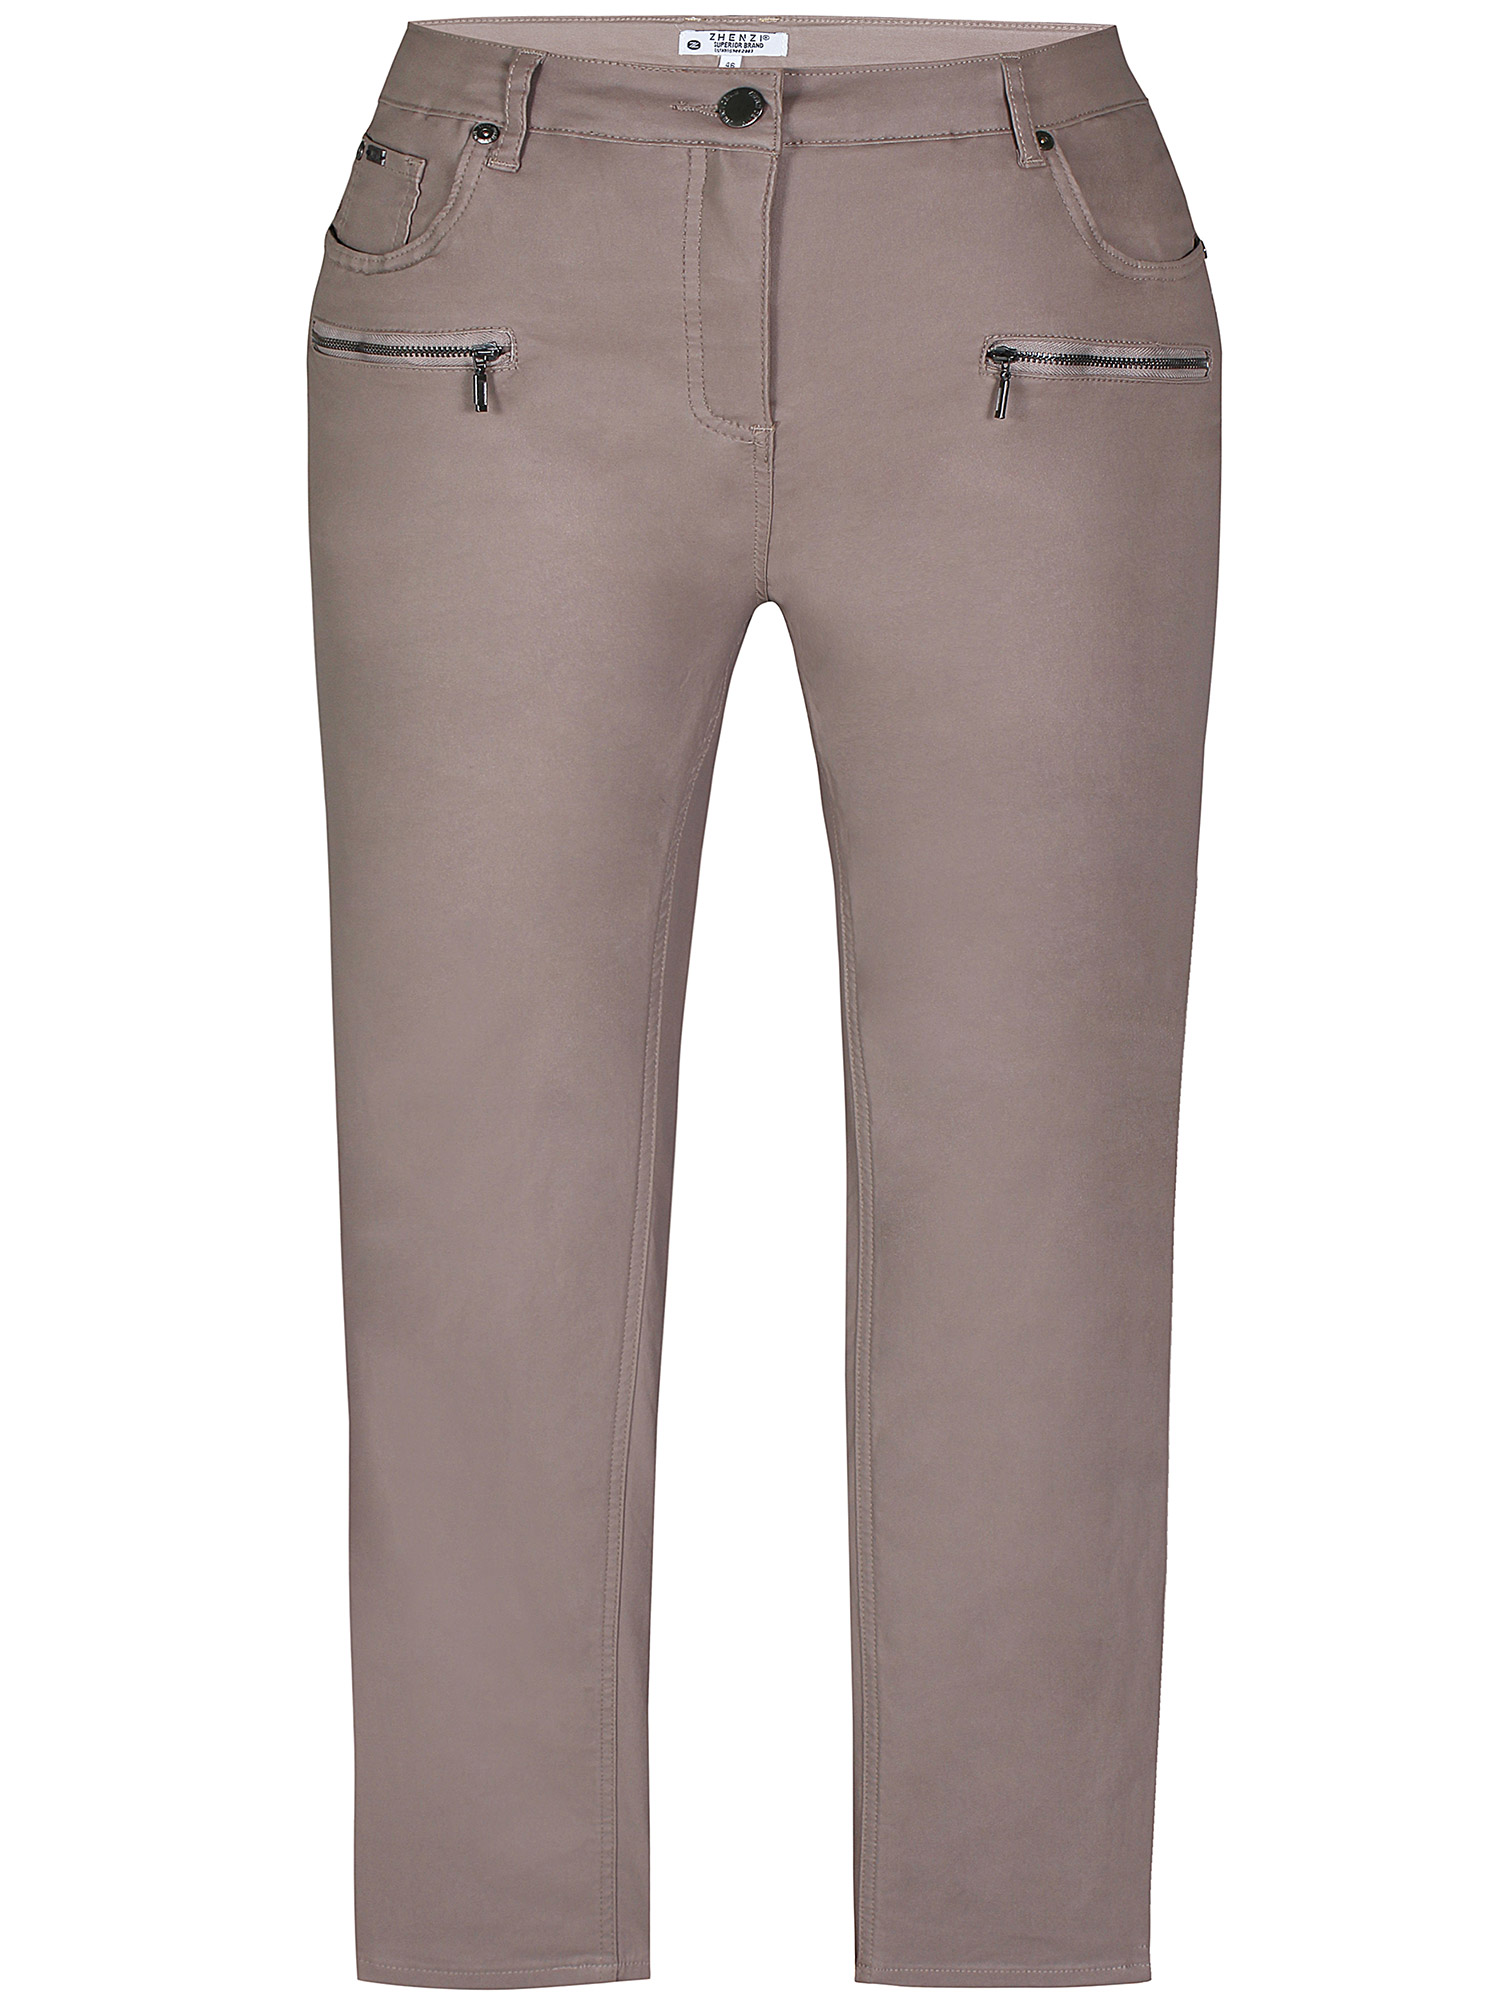 CURVE - Beige bukser med lett blank overflate fra Zhenzi